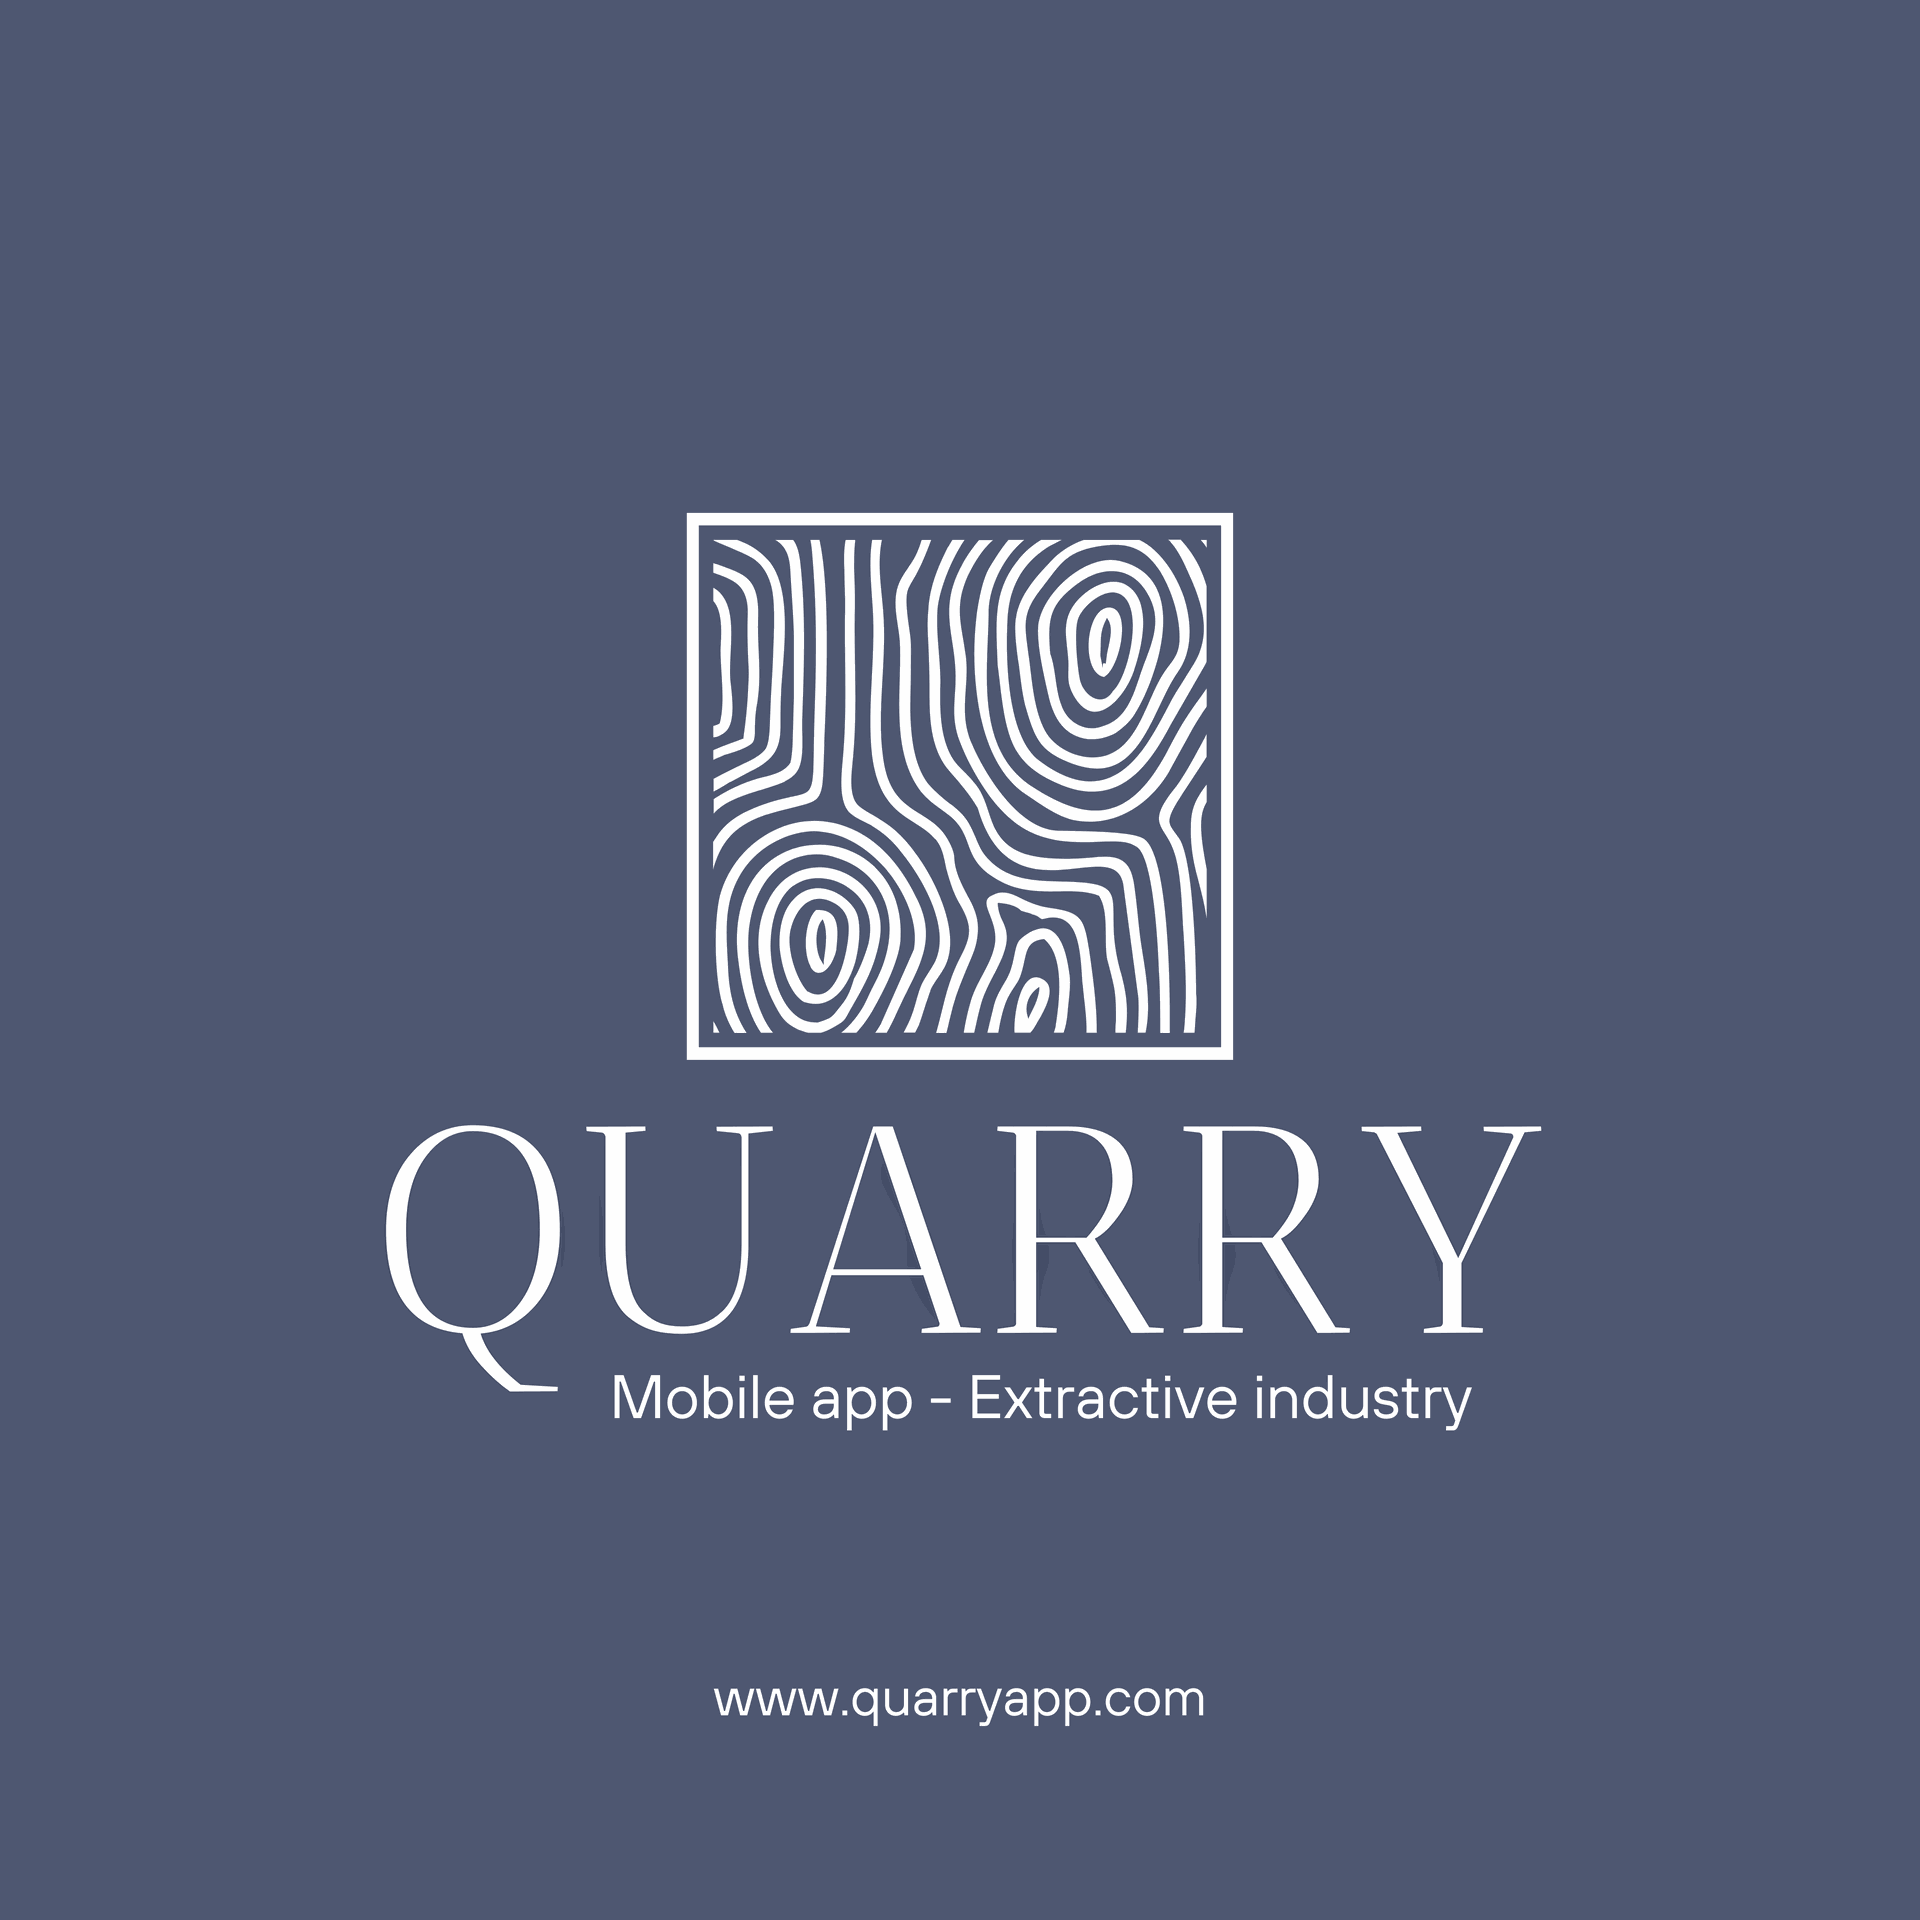 www.quarryapp.com